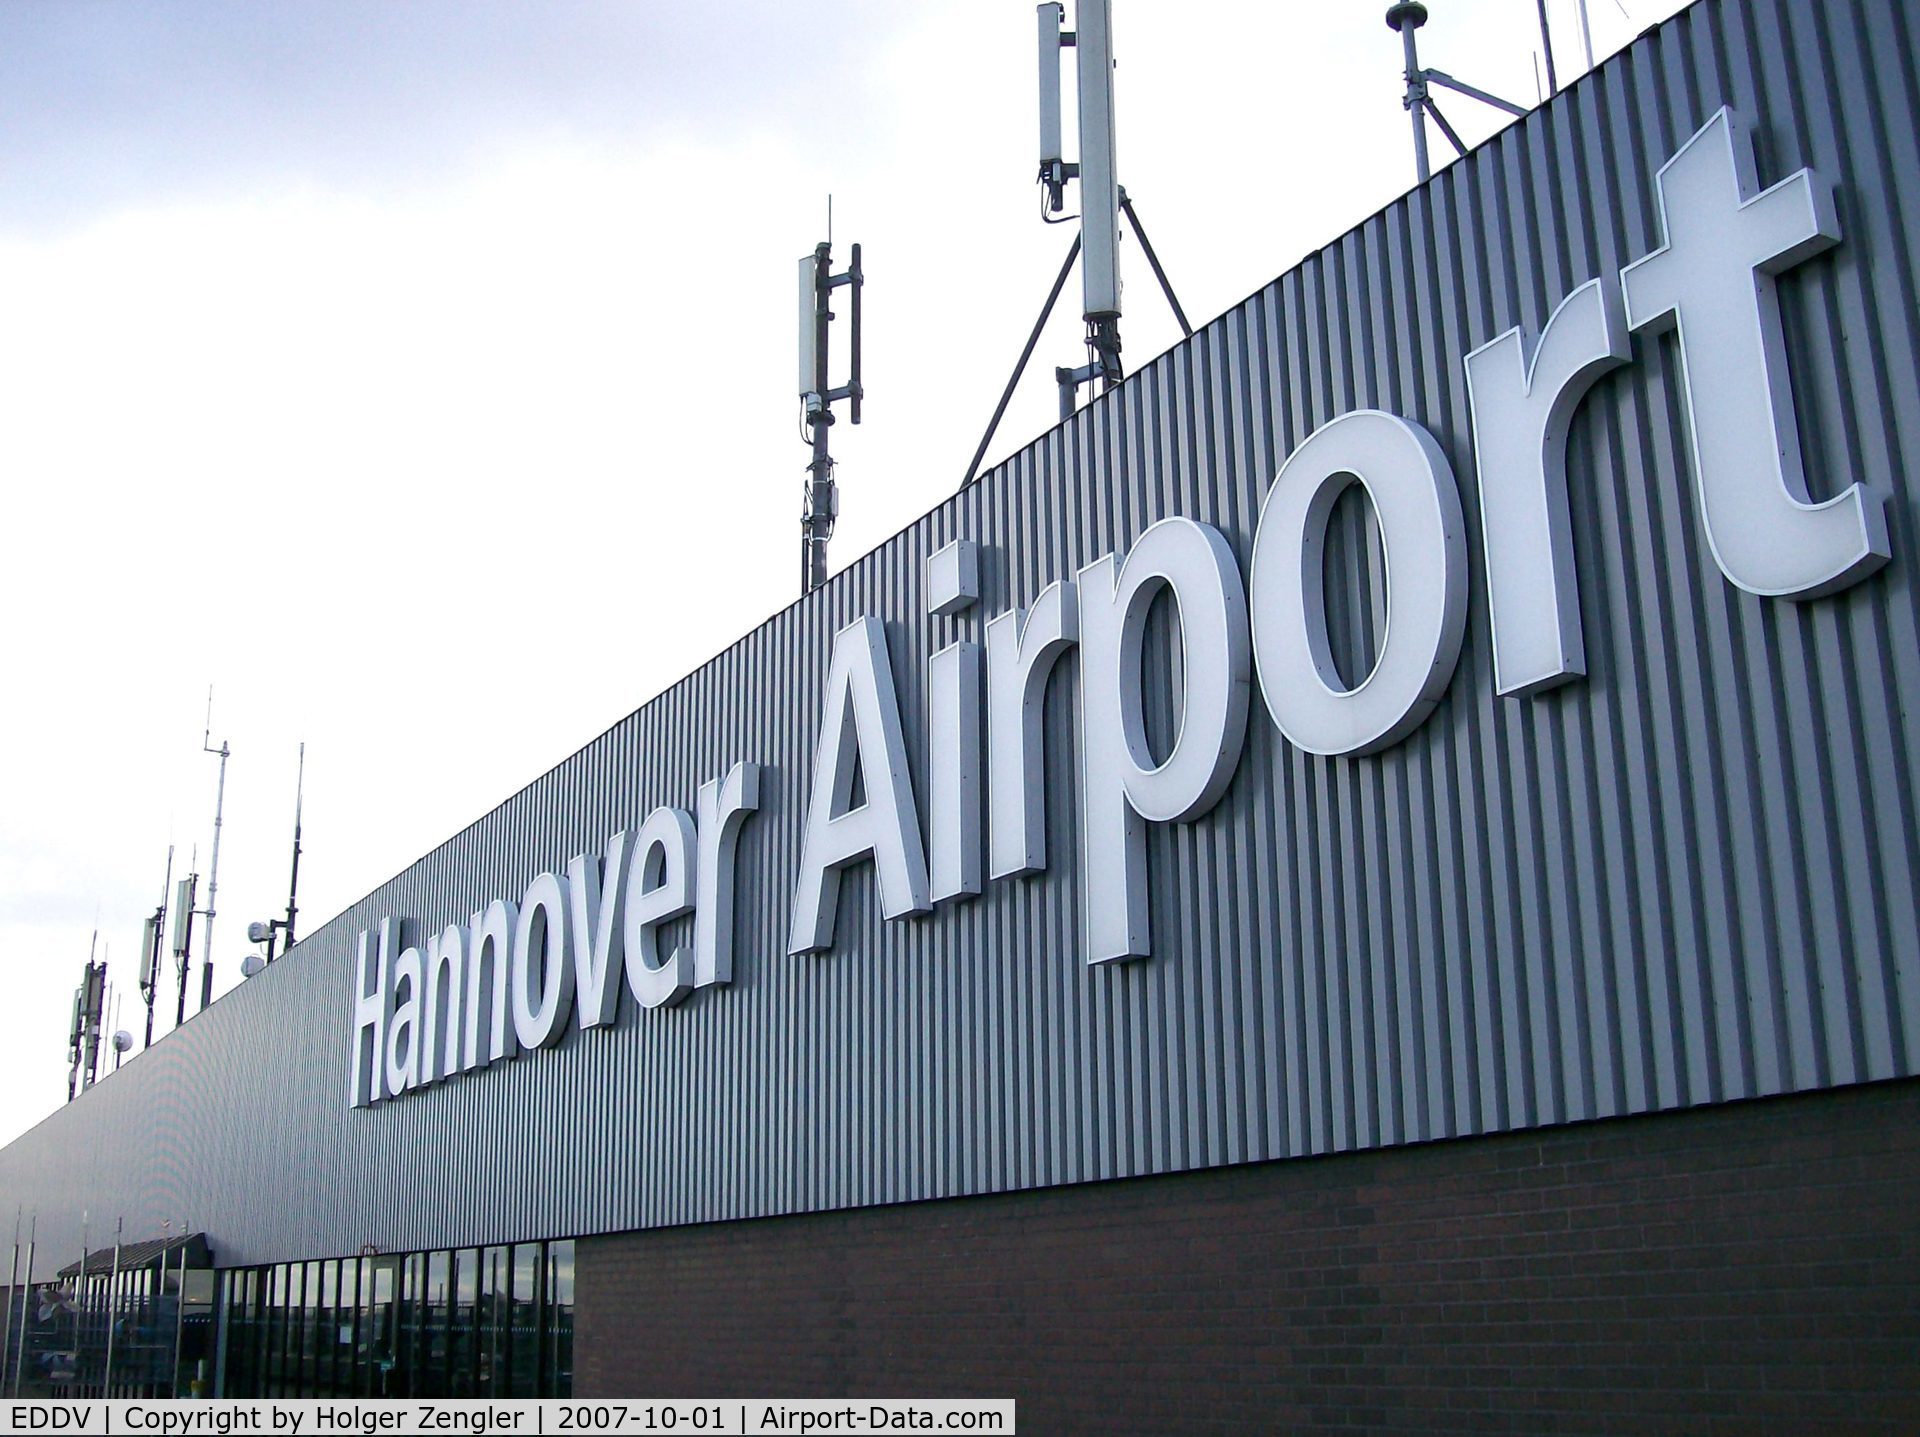 Hanover/Langenhagen International Airport, Hanover Germany (EDDV) - You are here: